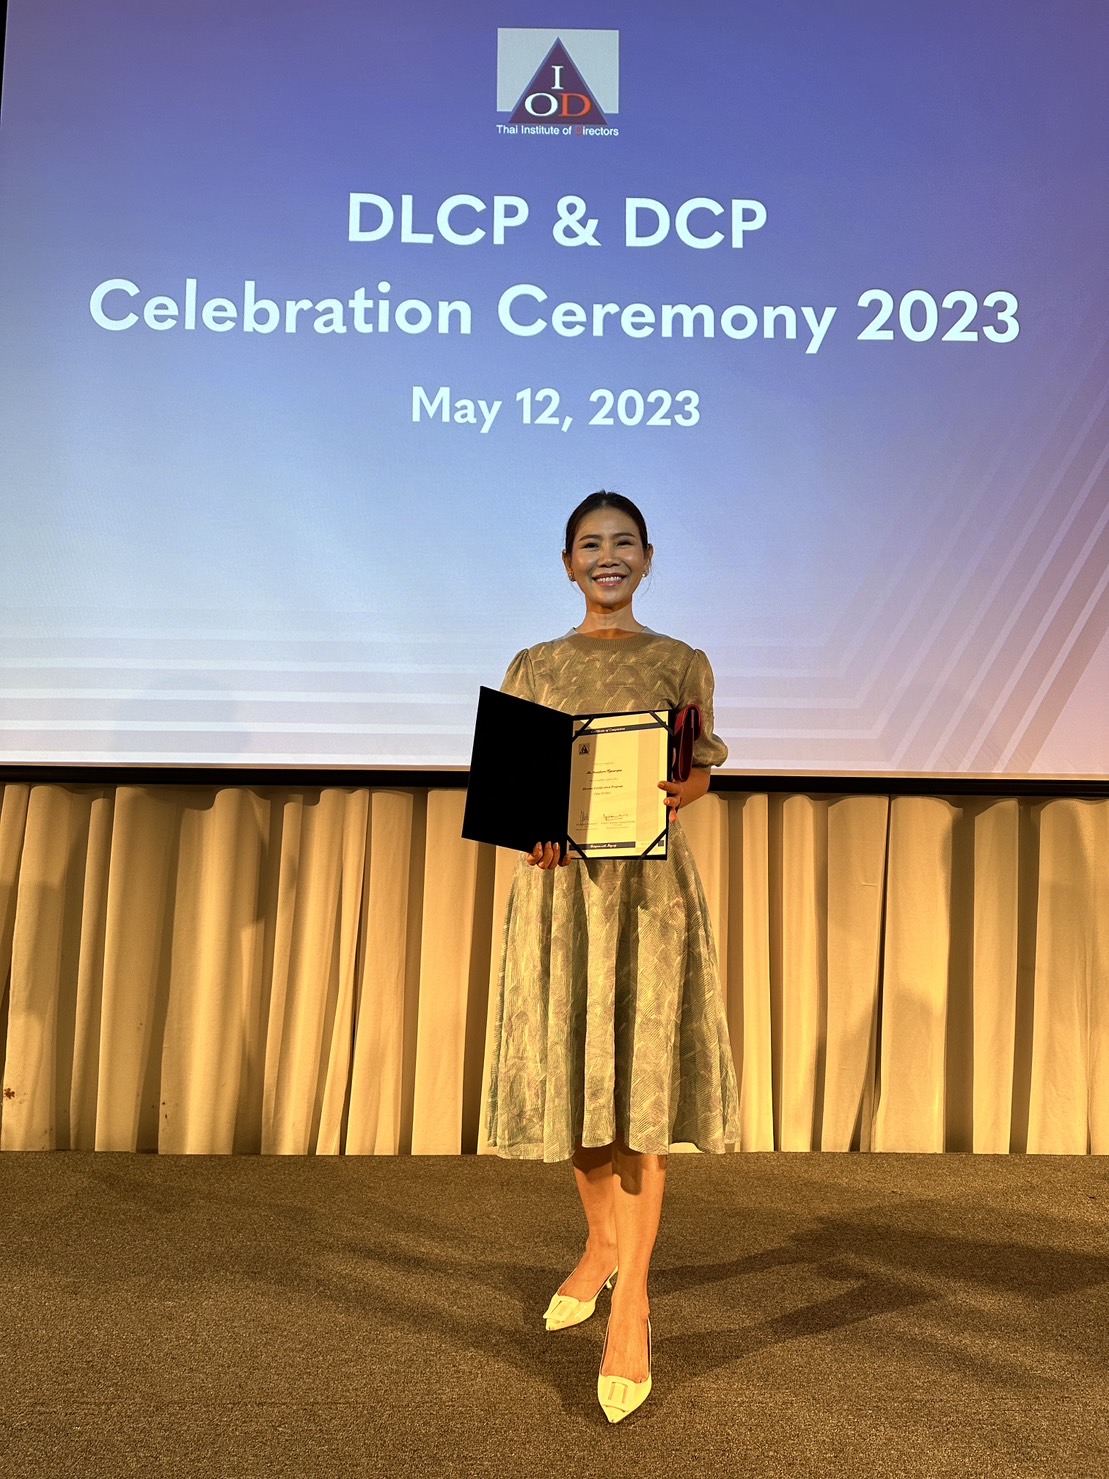 เดอร์ โรมา ฟราแกรนซ์ฯ รับประกาศนียบัตรหลักสูตร Director Certification Program (DCP) รุ่นที่ 331/2023 และ 332/2023 จากสมาคมส่งเสริมสถาบันกรรมการบริษัทไทย (IOD)